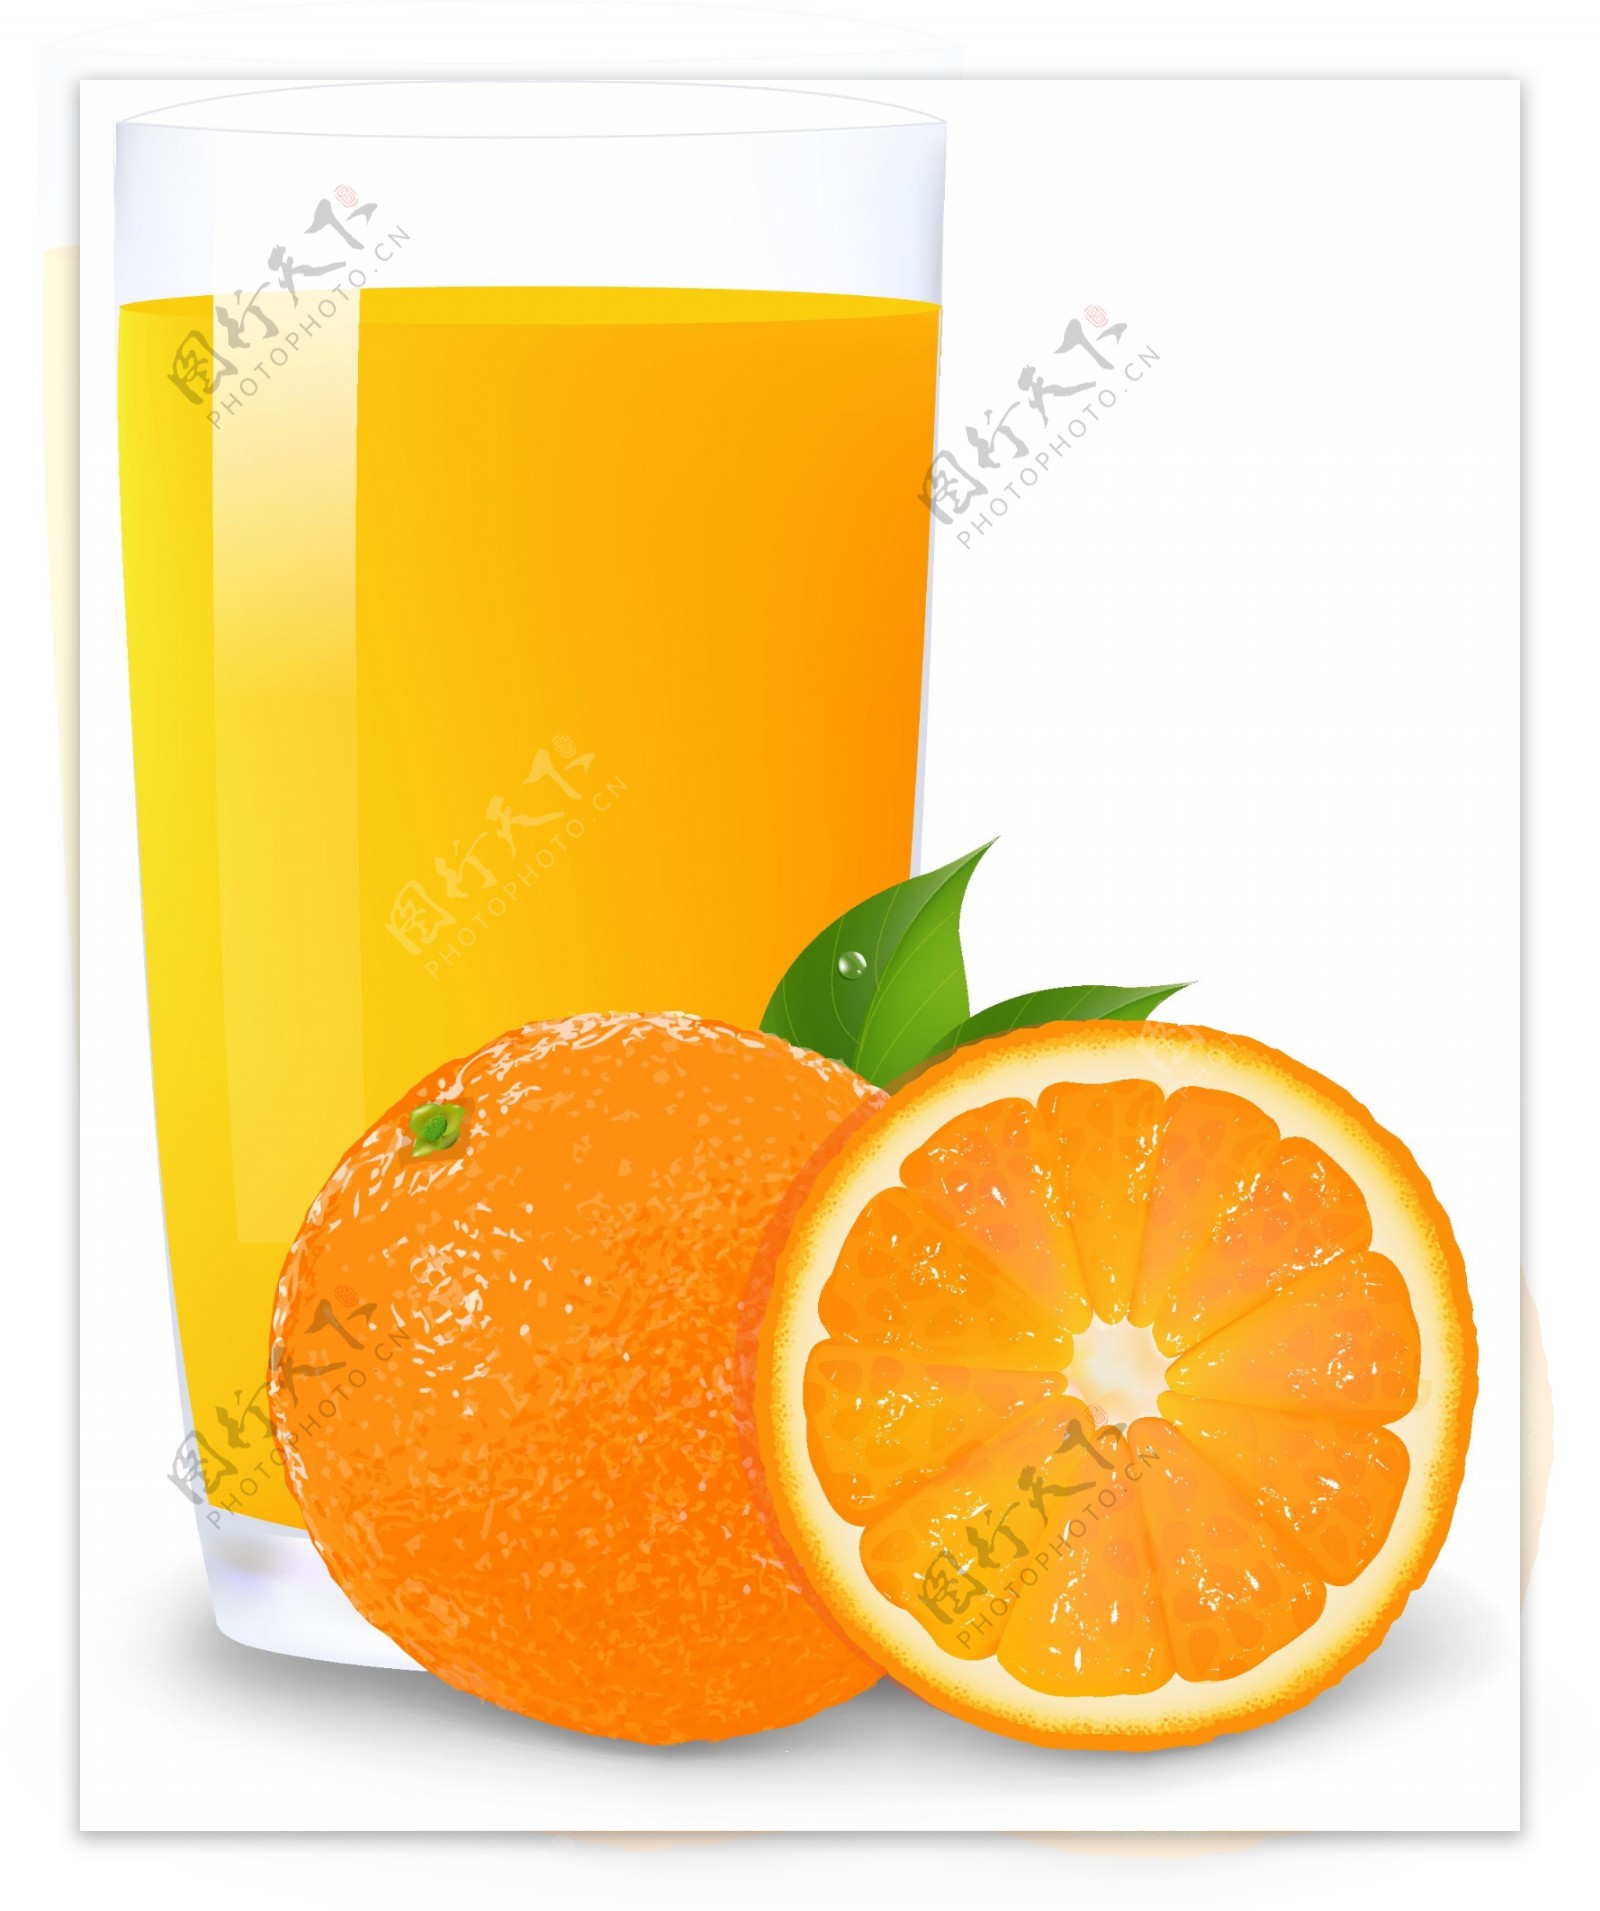 桔子橙子橙汁图片